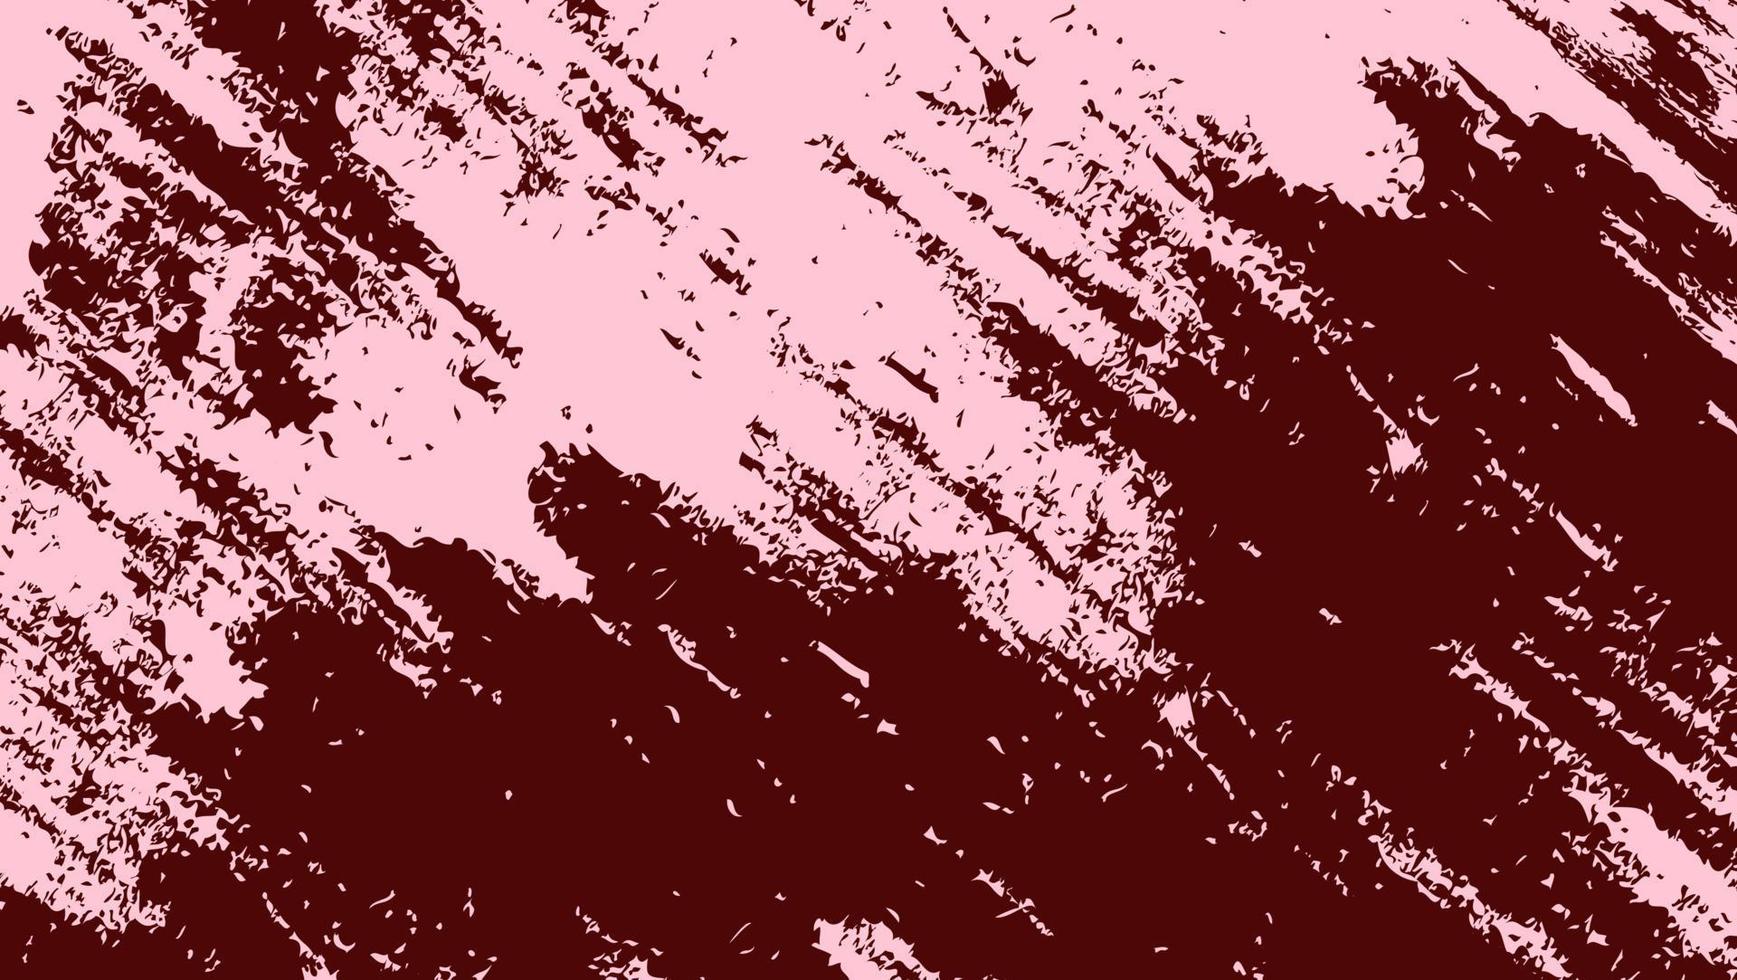 abstrakte grobe rote Grunge-Textur-Design-Hintergrund vektor